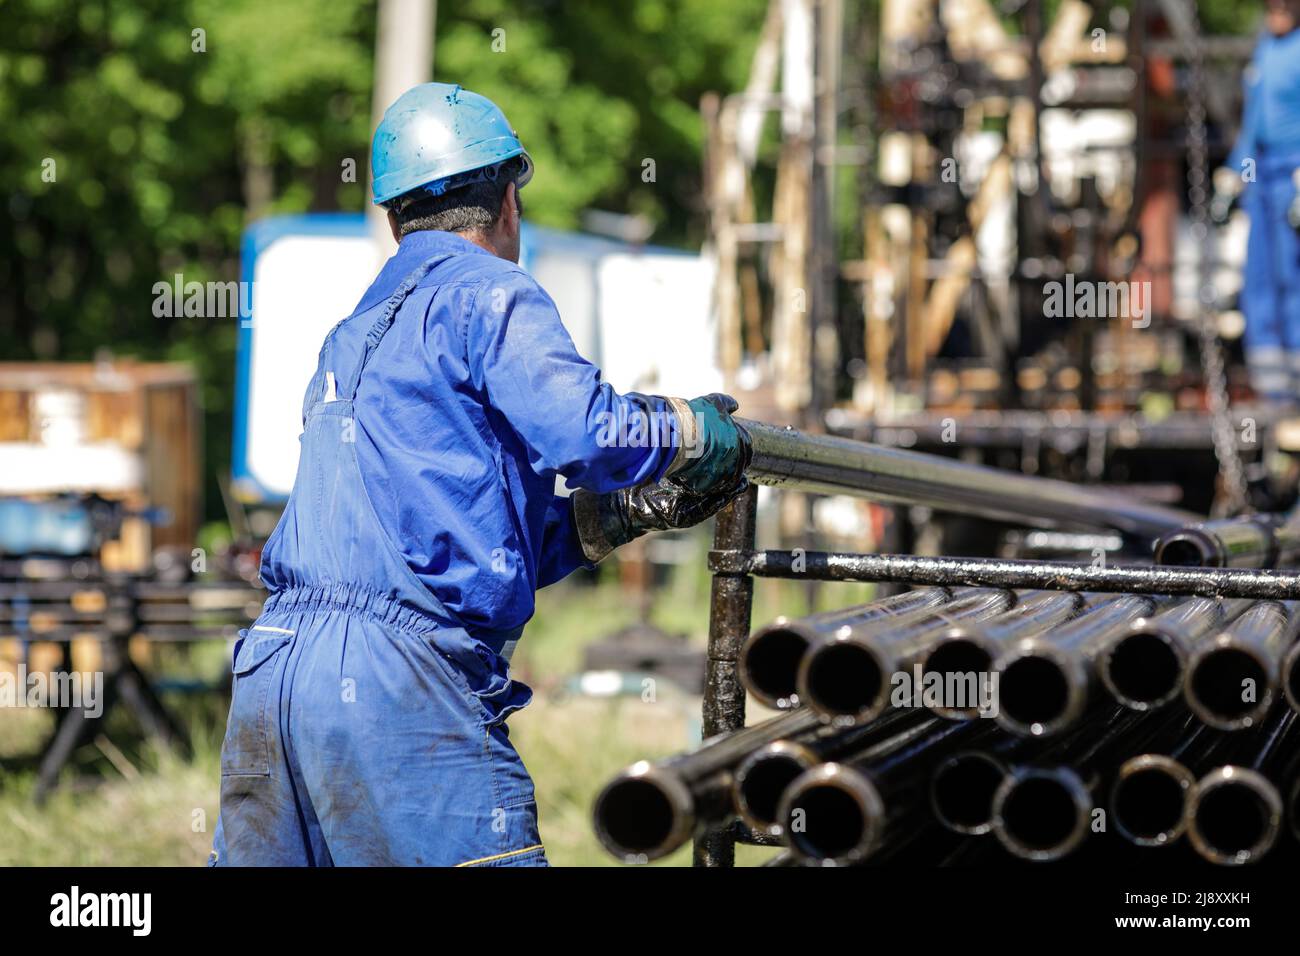 Mitarbeiter der Öl- und Gasindustrie betreibt Bohrrohre für Bohrinseln auf einer Bohrinsel. Stockfoto